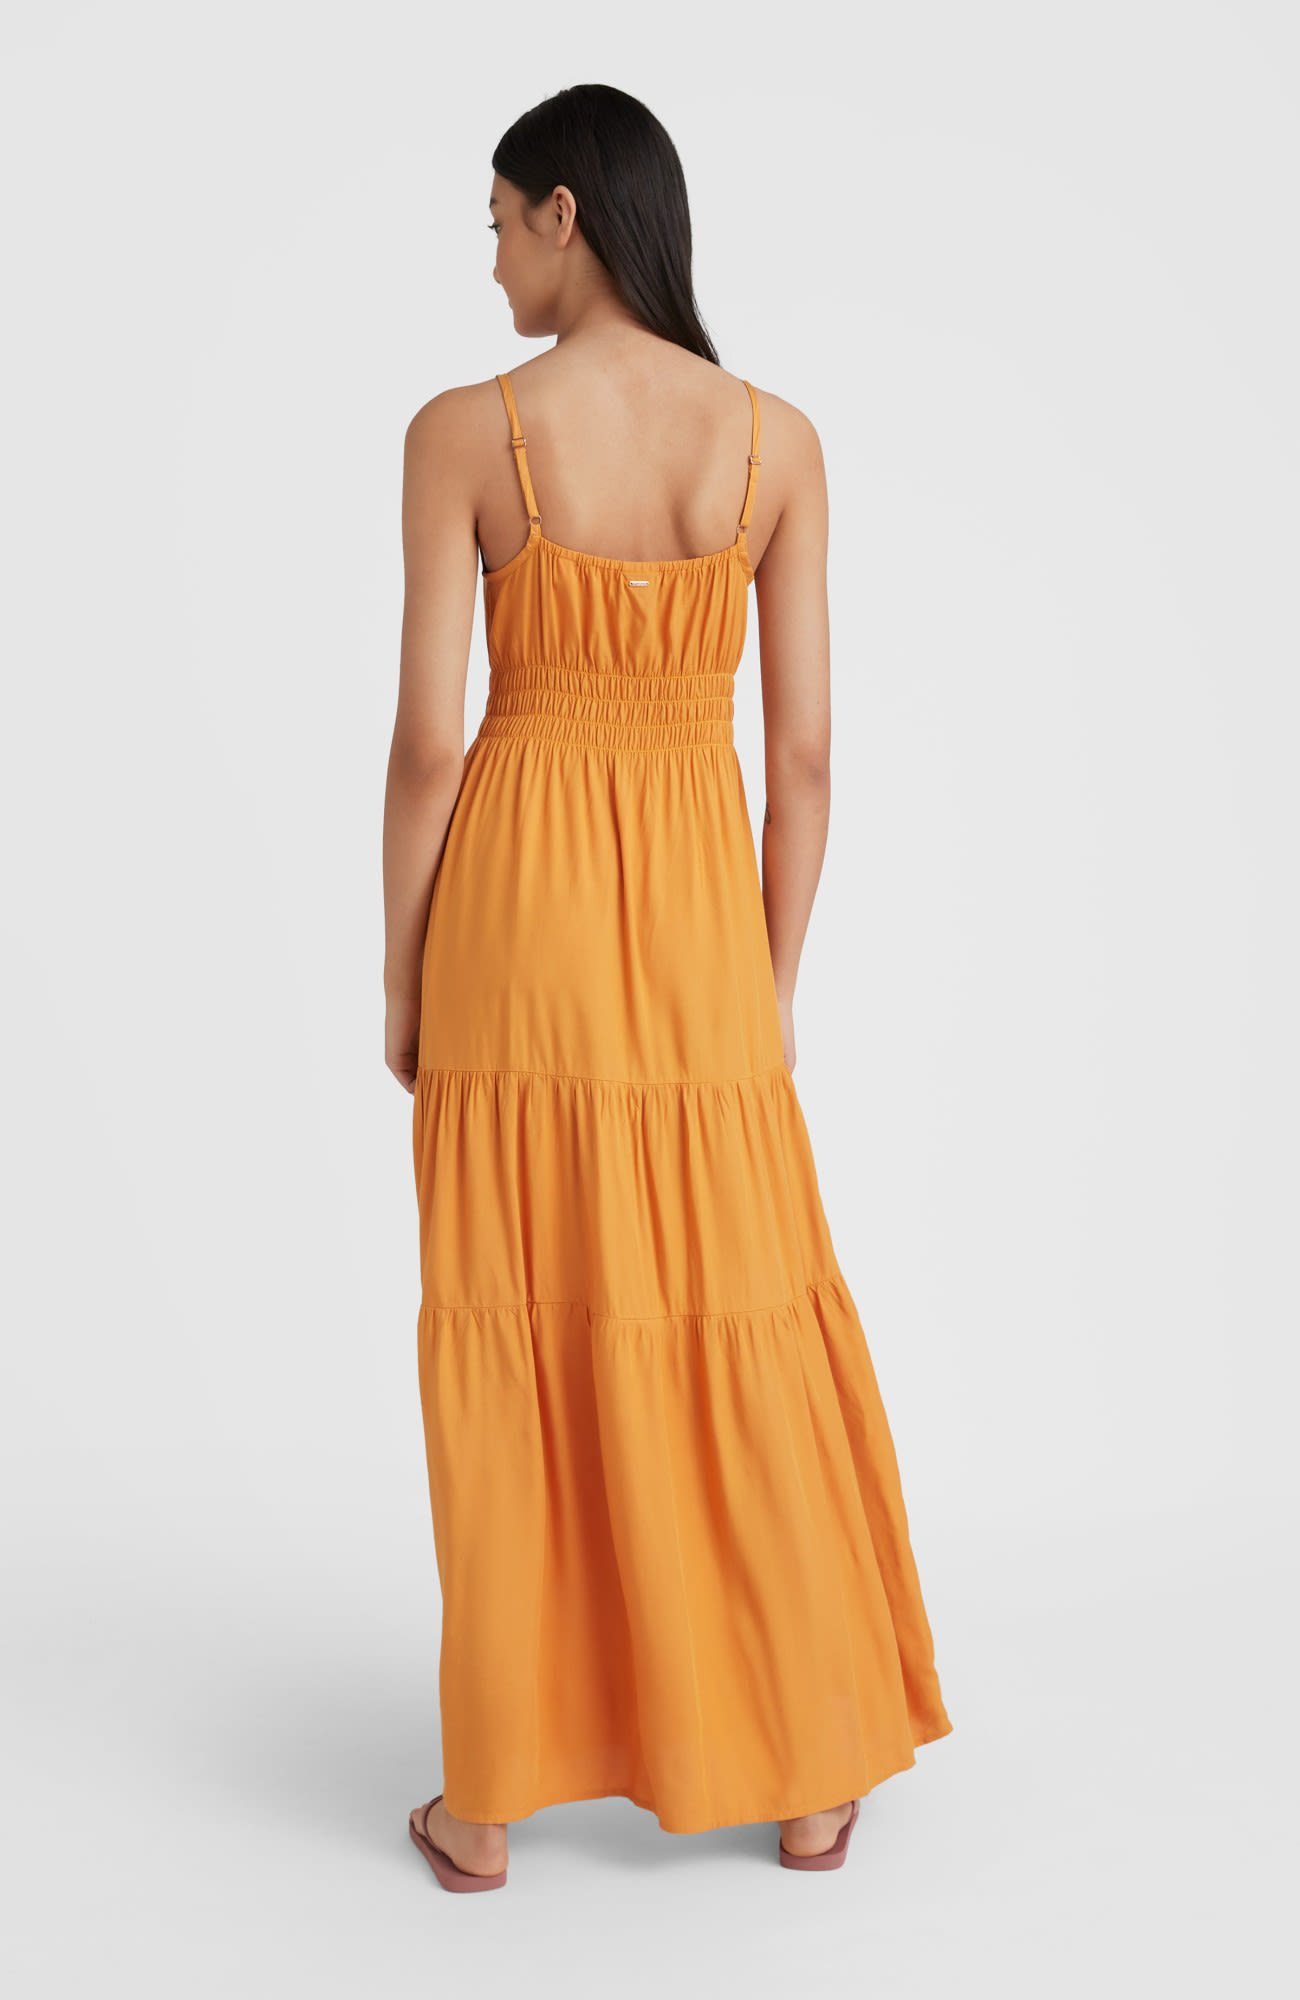 Kleid Dress Damen Maxi W Quorra Oneill O'Neill Yellow Sommerkleid